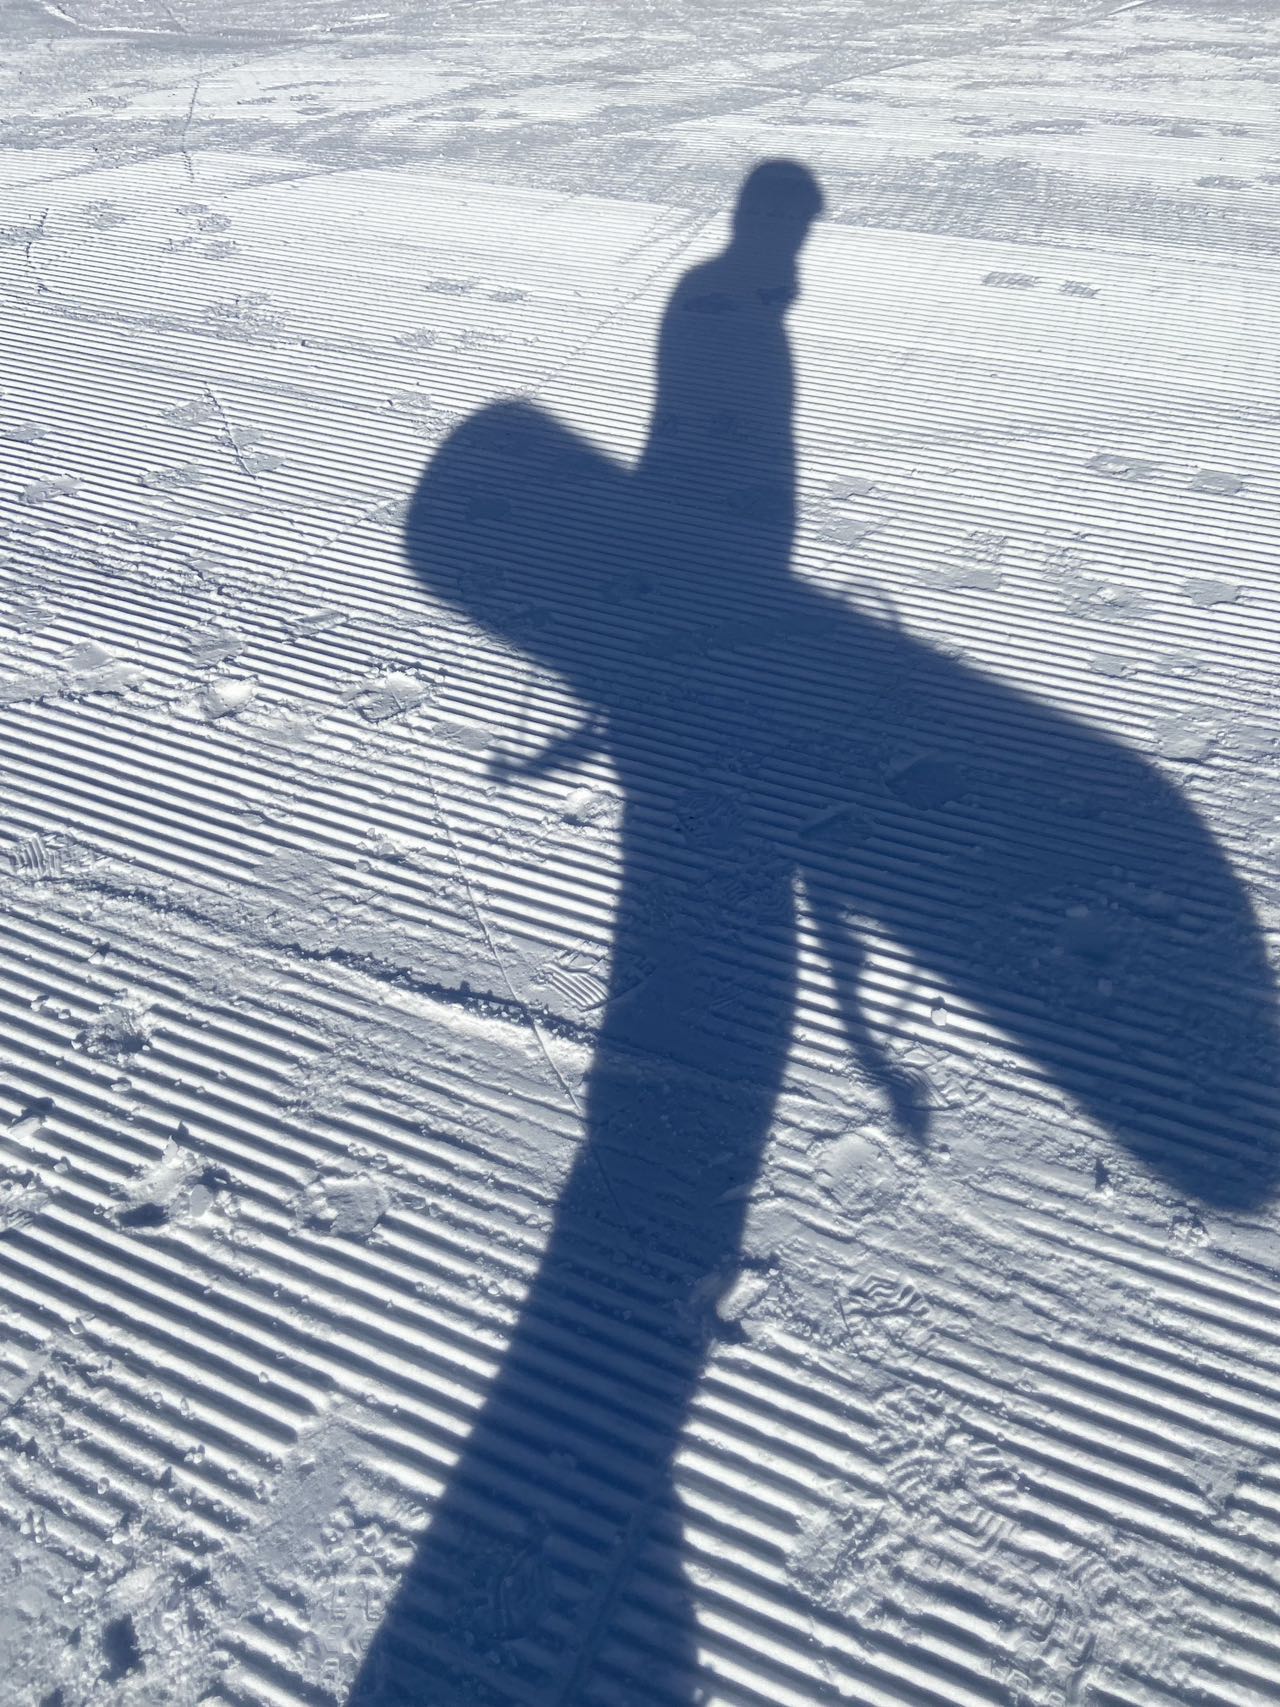 滑雪.jpg